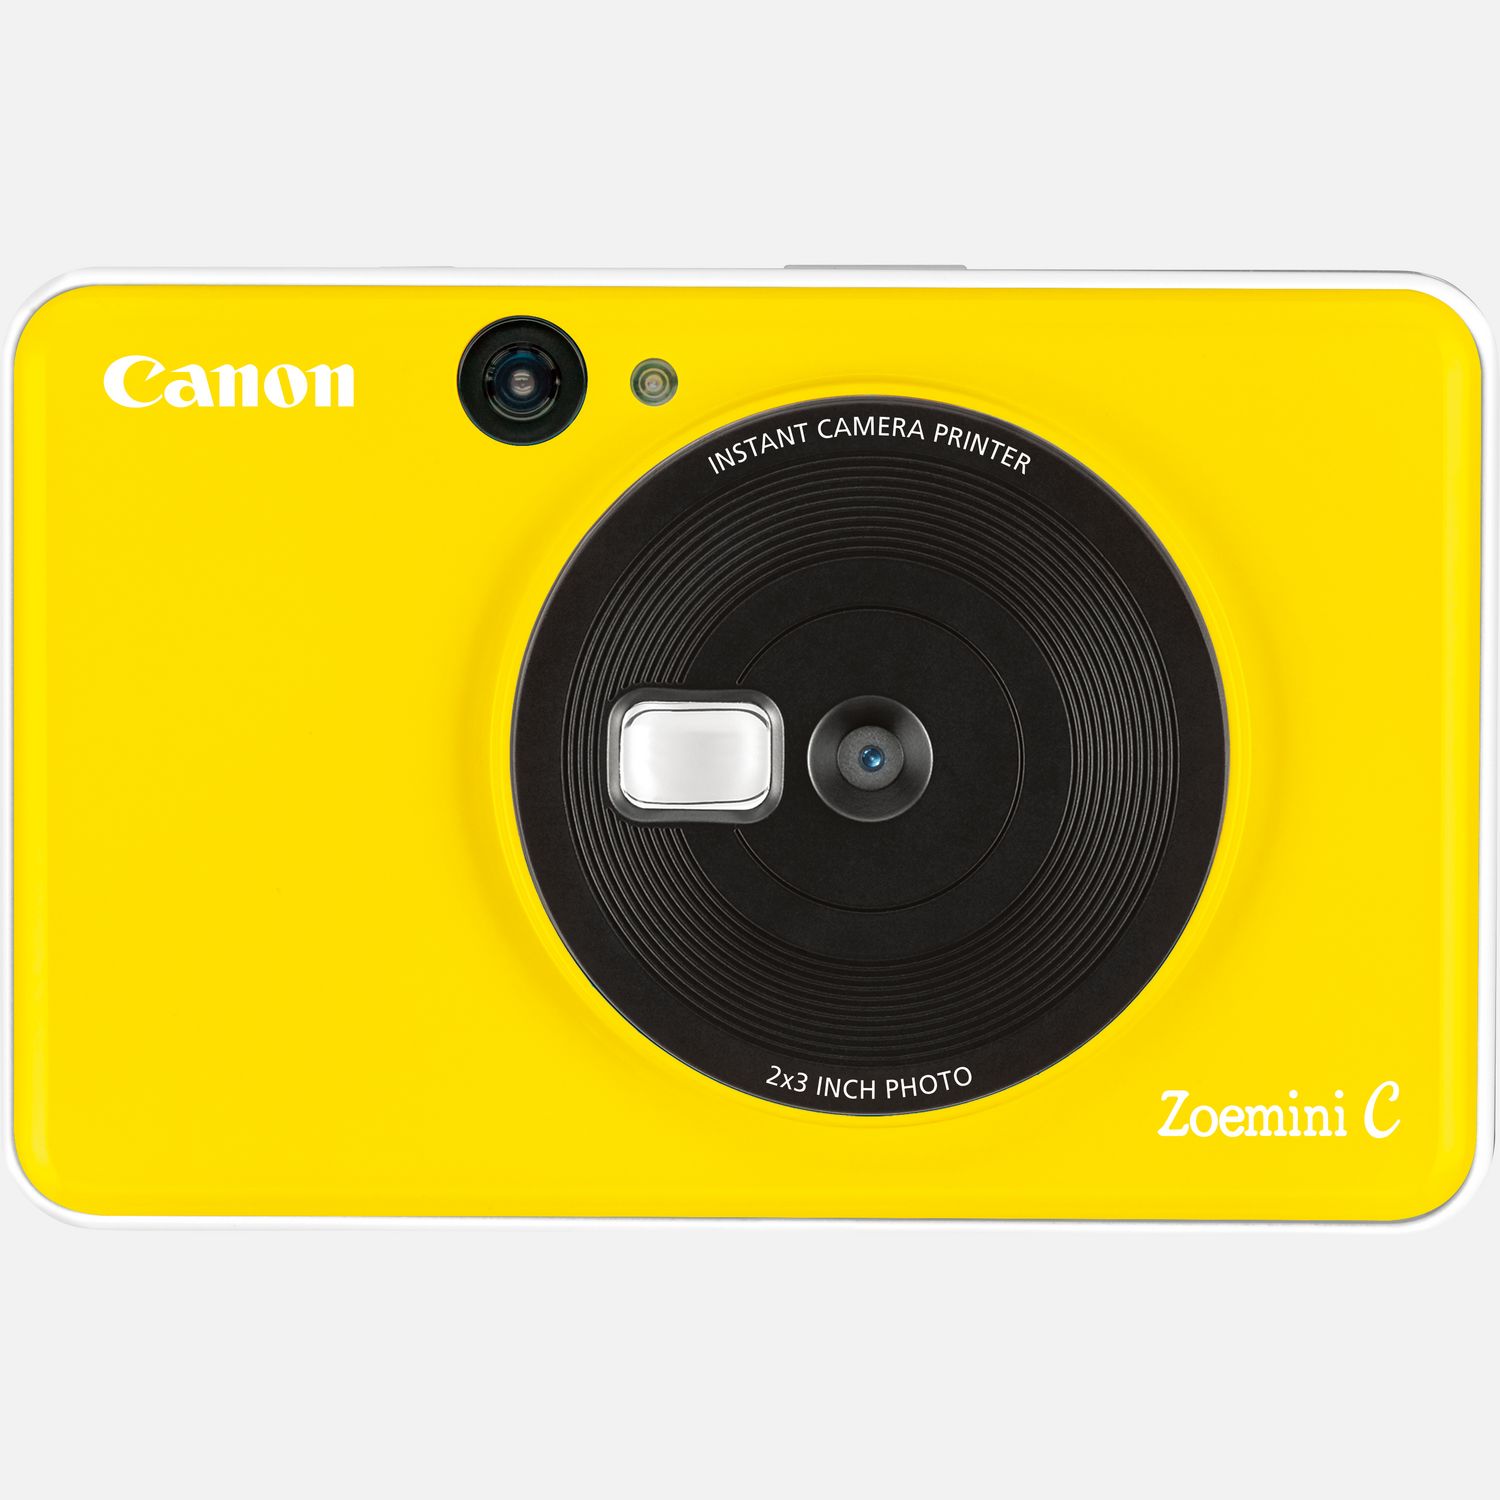 Der Canon Zoemini C ist die Lsung im Taschenformat fr lustige und schnelle Fotos  einfach lcheln und ein Selfie aufnehmen, das direkt als Foto-Sticker ausgedruckt wird. Klein und leicht passt er mhelos in die Hand- oder Hosentasche. Er verfgt ber einen Selfie-Spiegel, mit dem du gleich beim ersten Mal die perfekte Aufnahme machst. Die saubere, tintenfreie Zink-Technologie druckt sofort nach der Aufnahme farbenfrohe Aufkleber  und wenn du deine Schnappschsse sicher aufbewahren mchtest, kannst du sie auf einer Micro SD-Karte speichern. Nach dem Druck kannst du die Fotos von Freunden aufbewahren, sie als Andenken verschenken oder die Folie von der Kleberckseite abziehen, um deinem Handy oder einer Wand eine persnliche Note zu verleihen.  Vorteile      Schlanke und kompakte 2-in-1-Technologie  Fotos aufnehmen und sofort drucken          Einfach berall hin mitnehmen! Der Canon Zoemini C passt in eine Hand und wiegt nur ca. 170 g          Mit dem vorn angebrachten Spiegel kannst du deine Pose berprfen und den Moment mit der 5-Megapixel-Kamera festhalten          Dank der tintenfreien Zink-Technologie, bei der alles ganz einfach und sauber zugeht, erhltst du wunderschne wischfeste, reifeste und wasserabweisende Drucke mit 314 x 500 dpi          Nach dem Drucken lassen sich die Sticker berall aufkleben oder an andere weitergeben. Bis zu 10 Blatt Zink-Fotopapier mit Kleberckseite im Format 5 x 7,5 cm passen in die Sofortbildkamera mit Mini-Fotodrucker  damit kannst du deine Fotos berall hin kleben          Und zum Speichern der Aufnahmen kannst du eine Micro SD Karte in den entsprechenden Slot des Canon Zoemini C einsetzen          4 Farben stehen zur Auswahl, so dass du die Sofortbildkamera mit Mini-Fotodrucker ganz nach deinem Stil auswhlen kannst  Bubblegum Pink, Bumblebee Gelb, Mintgrn und Seaside Blau          Lieferumfang       Canon Zoemini C Sofortbildkamera und Mini-Fotodrucker, Bumblebee Gelb         USB-Kabel         Kurzanleitung         Canon Zink Fotopapier (10 Blatt) + 1 SMARTSHEET         Handschlaufe              Technische Daten              Zink Drucktechnologie                Leichtes Design (ca. 170 Gramm)                314 x 500 dpi Auflsung                10-Blatt-Kapazitt (Zink 5 x 7,5 cm Fotopapier)                5-Megapixel-Kamera                Micro SD-Speicherkarte          Alle technischen Daten zeigen